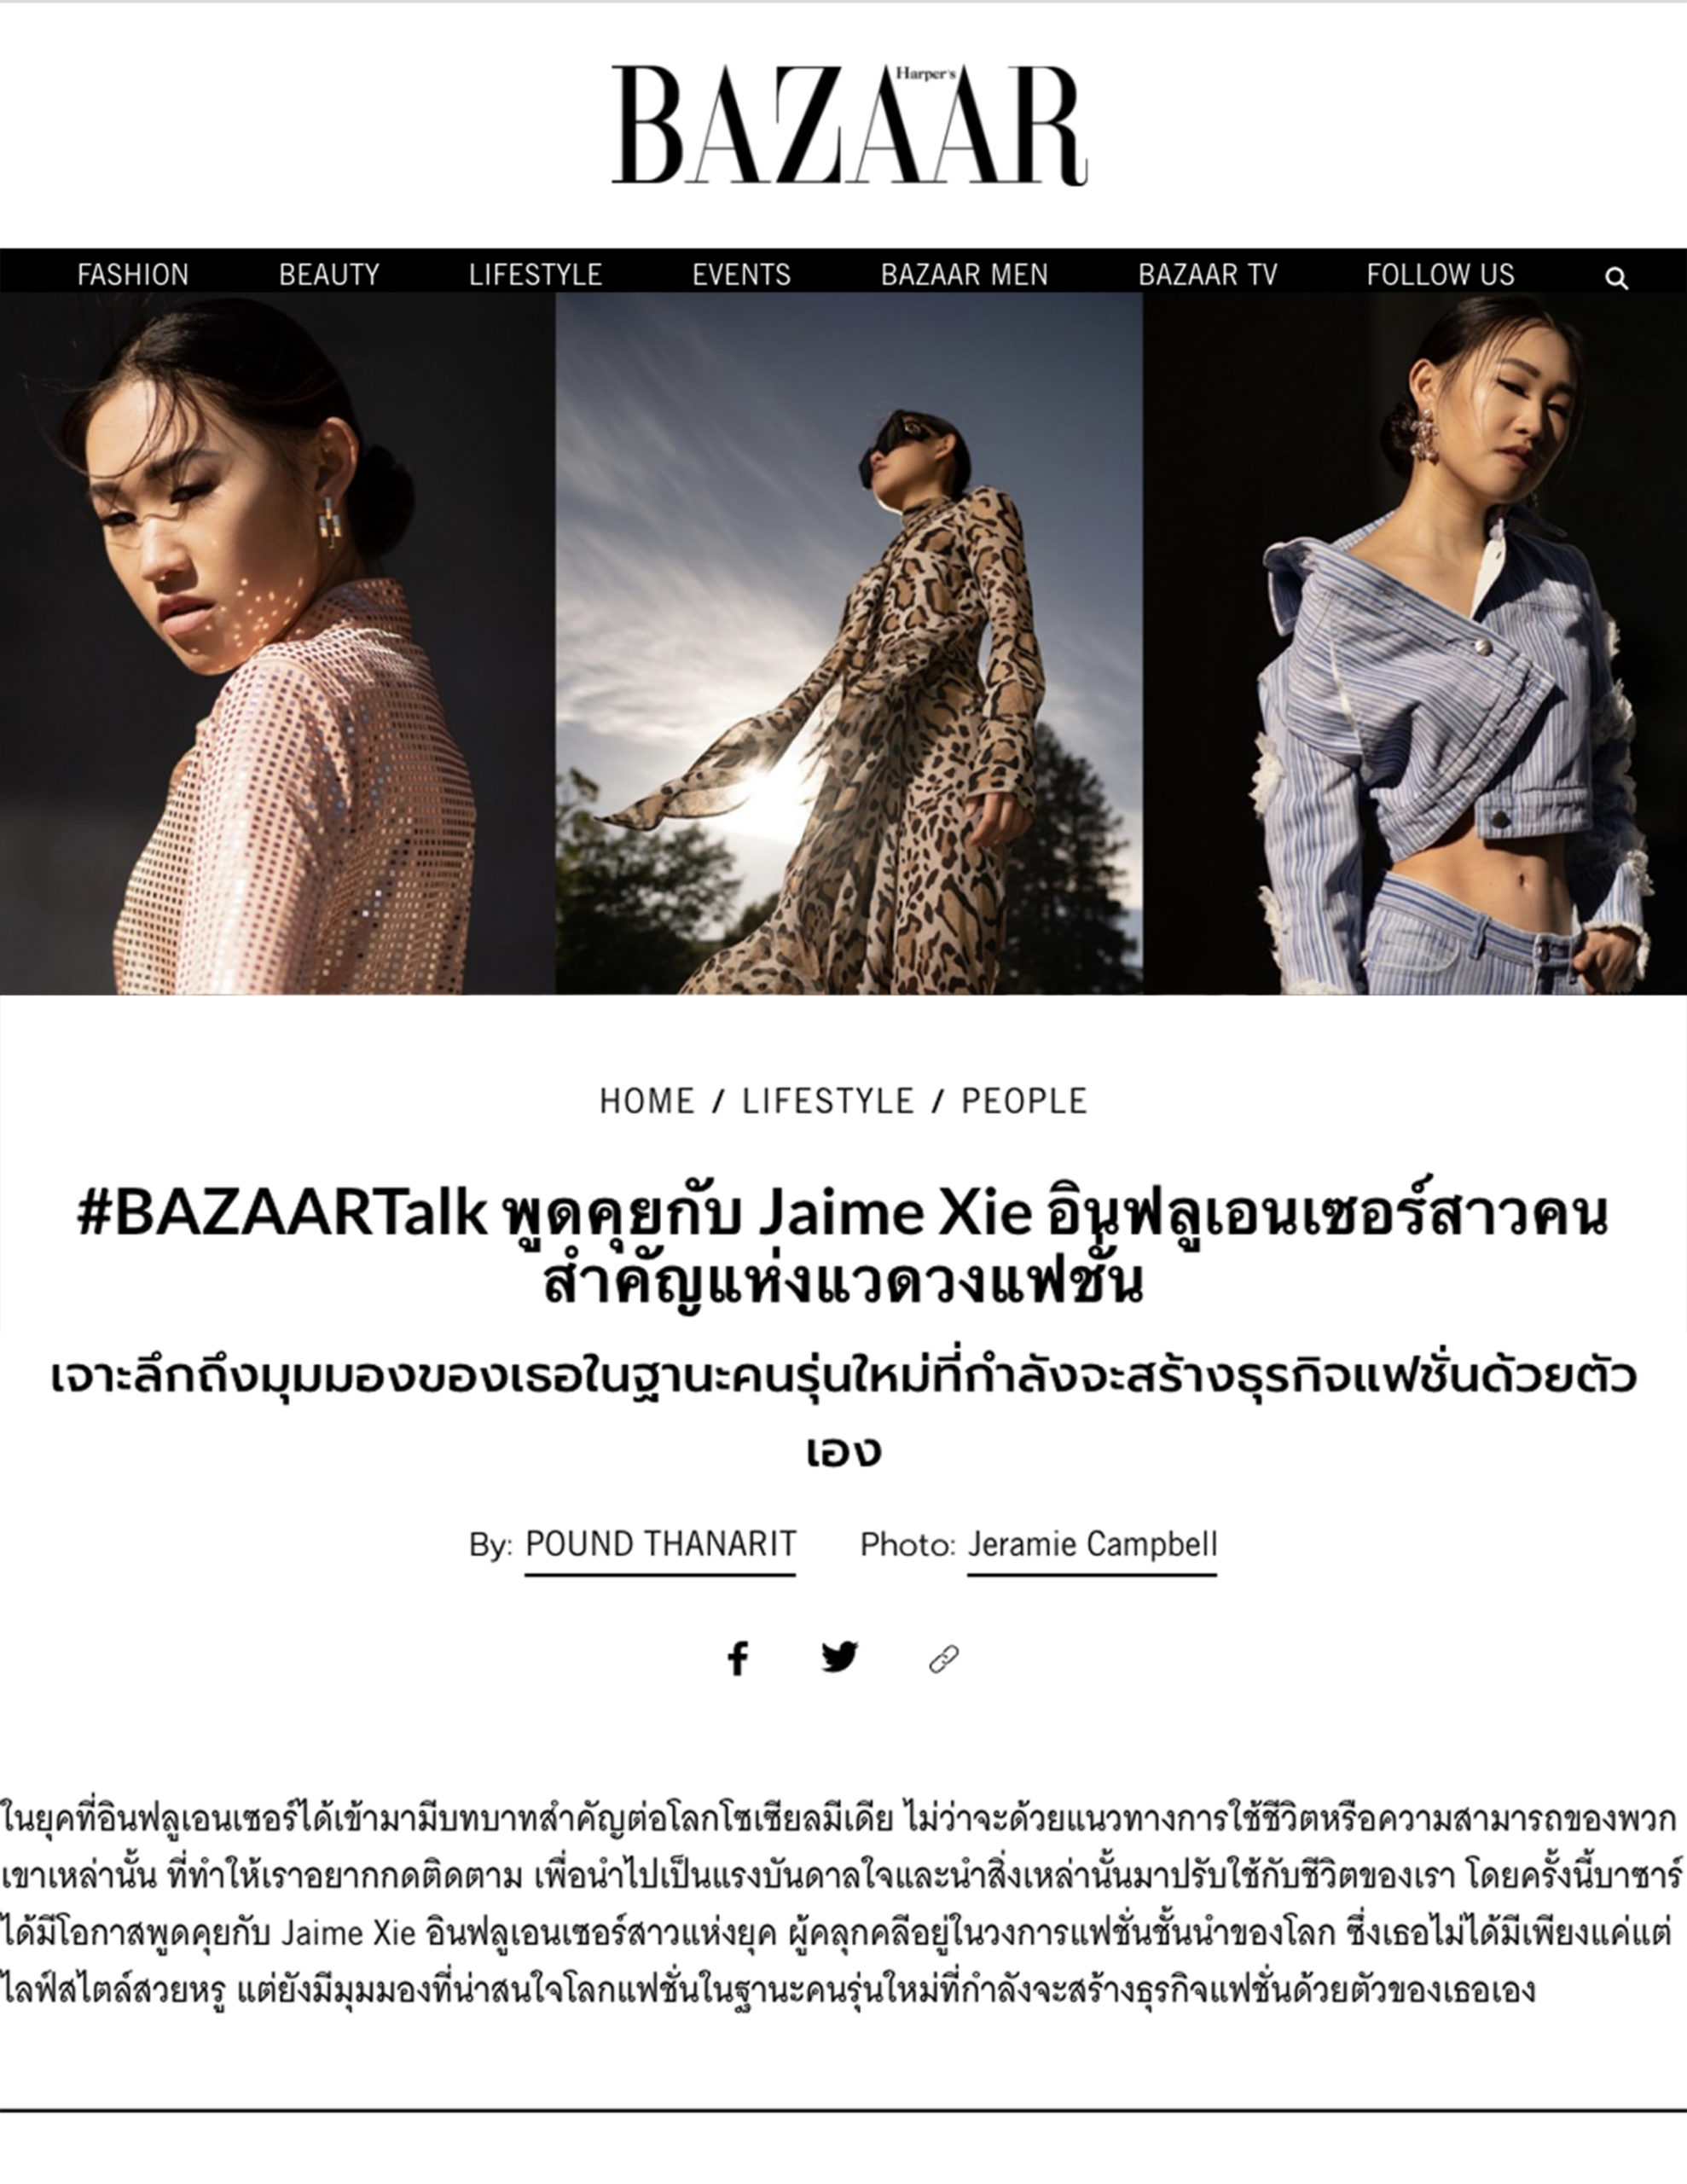 Harpers Bazaar Thailand: #BazaarTalk